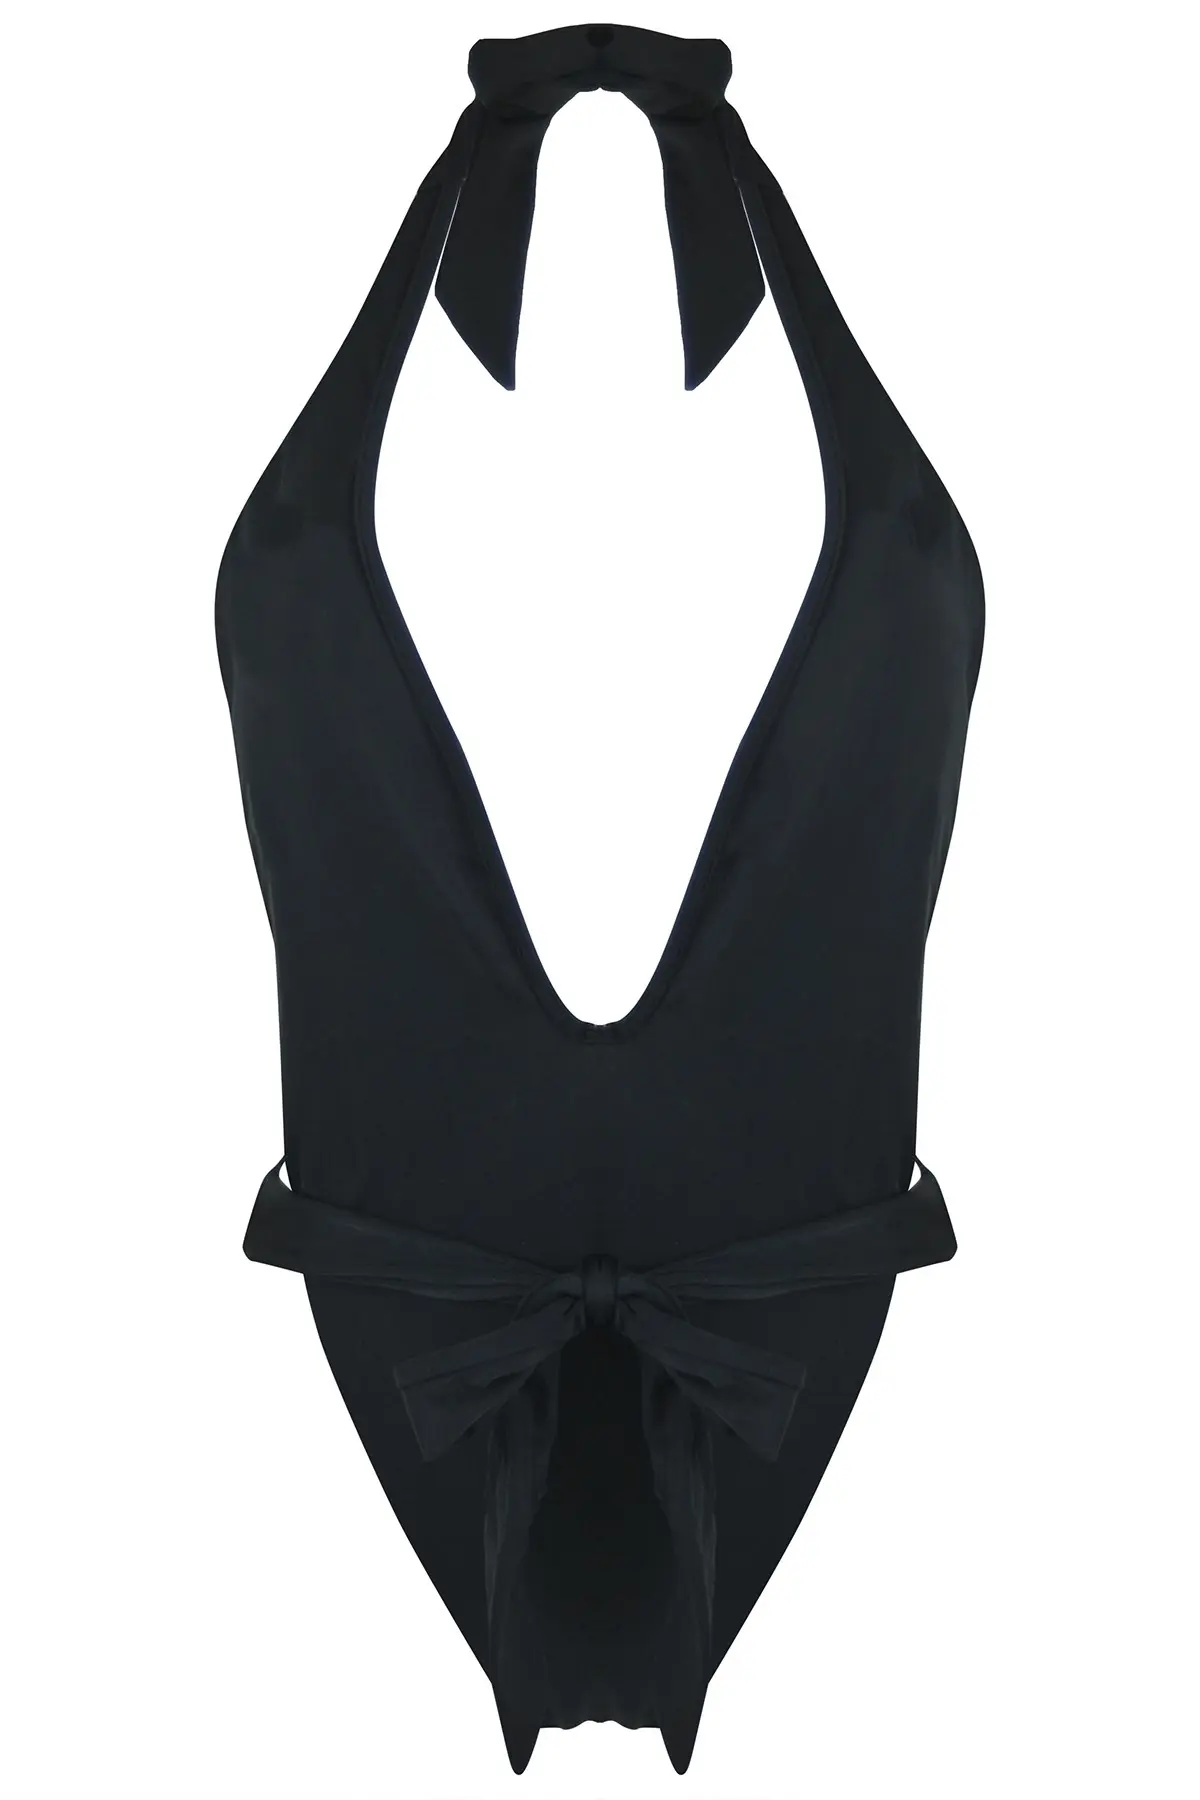 LBS Tie Halter Cut Out Swimsuit | Black | Pour Moi